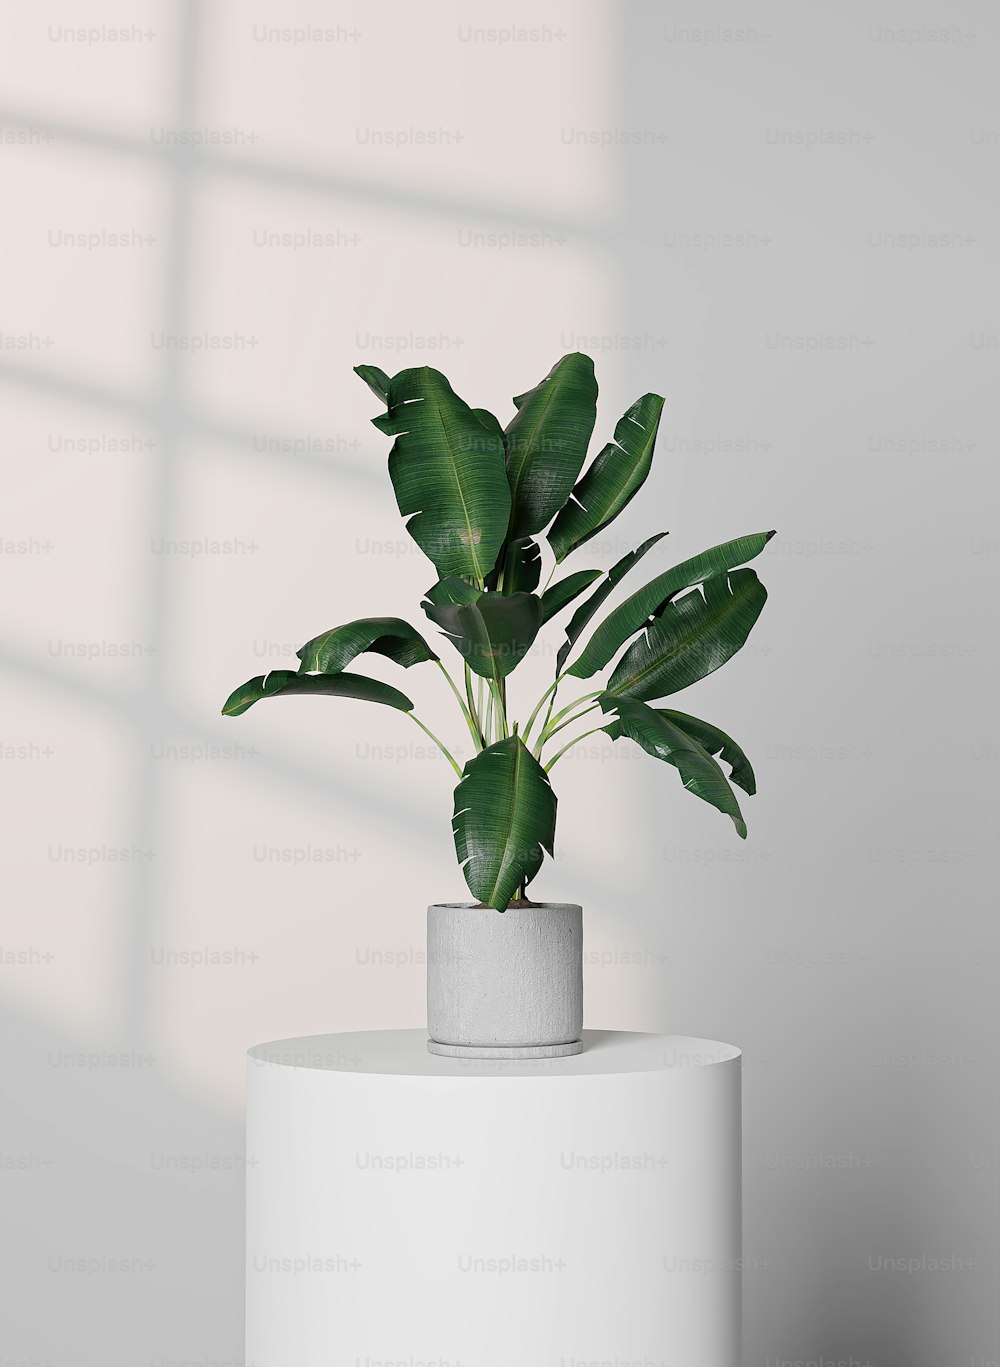 Una planta en maceta sentada encima de una mesa blanca